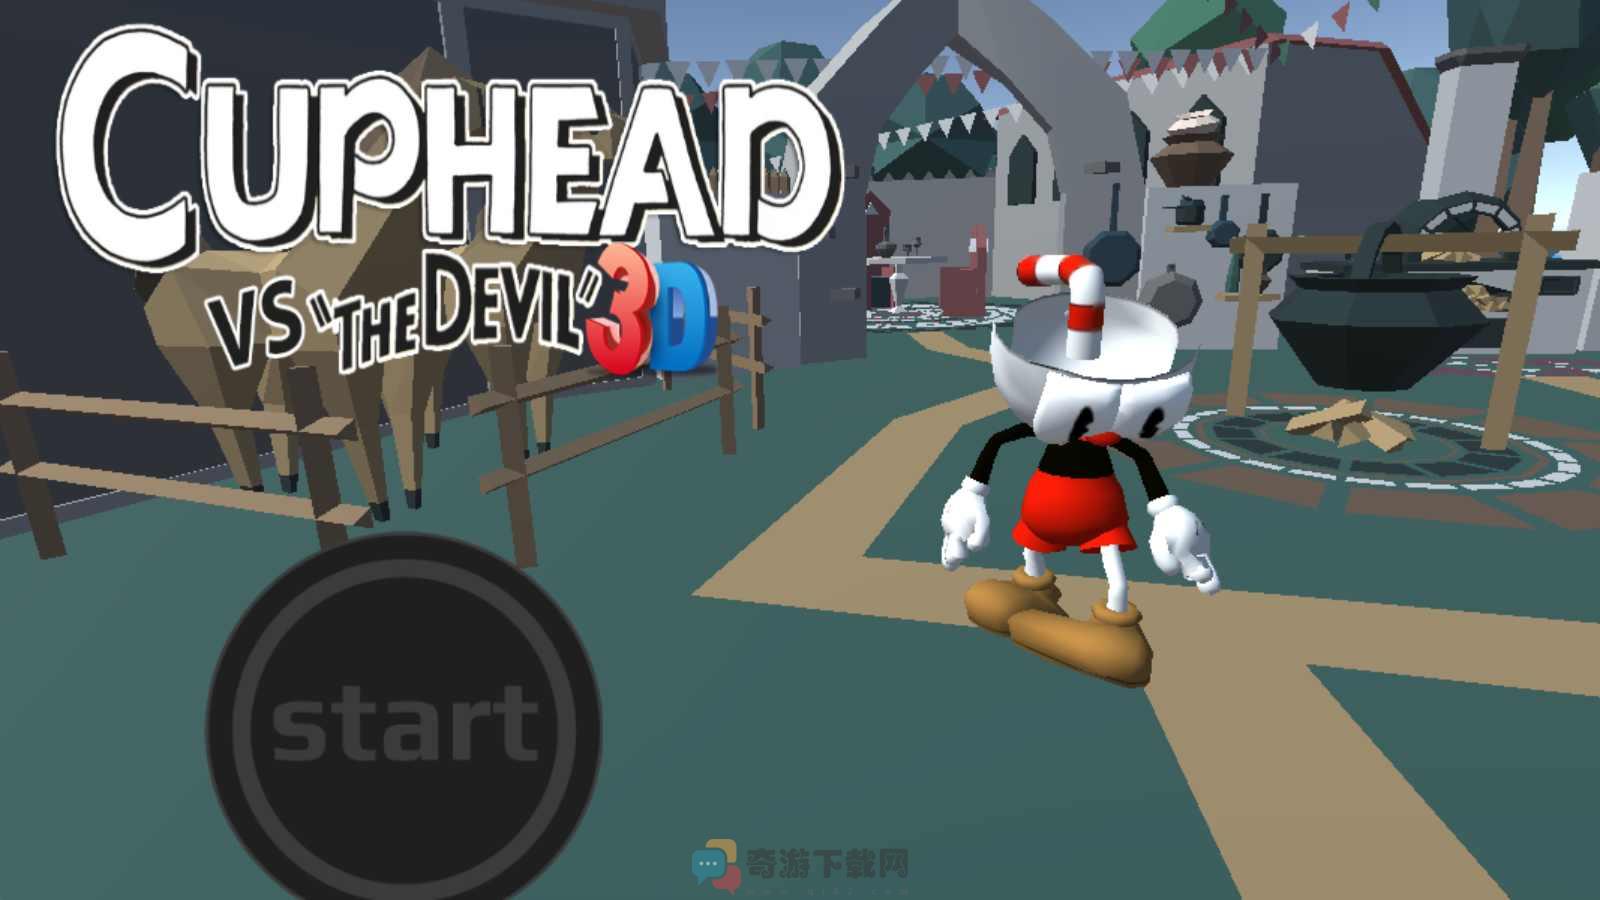 茶杯头3d版下载安装手机版（Cuphead vs the devil 3D）图片1